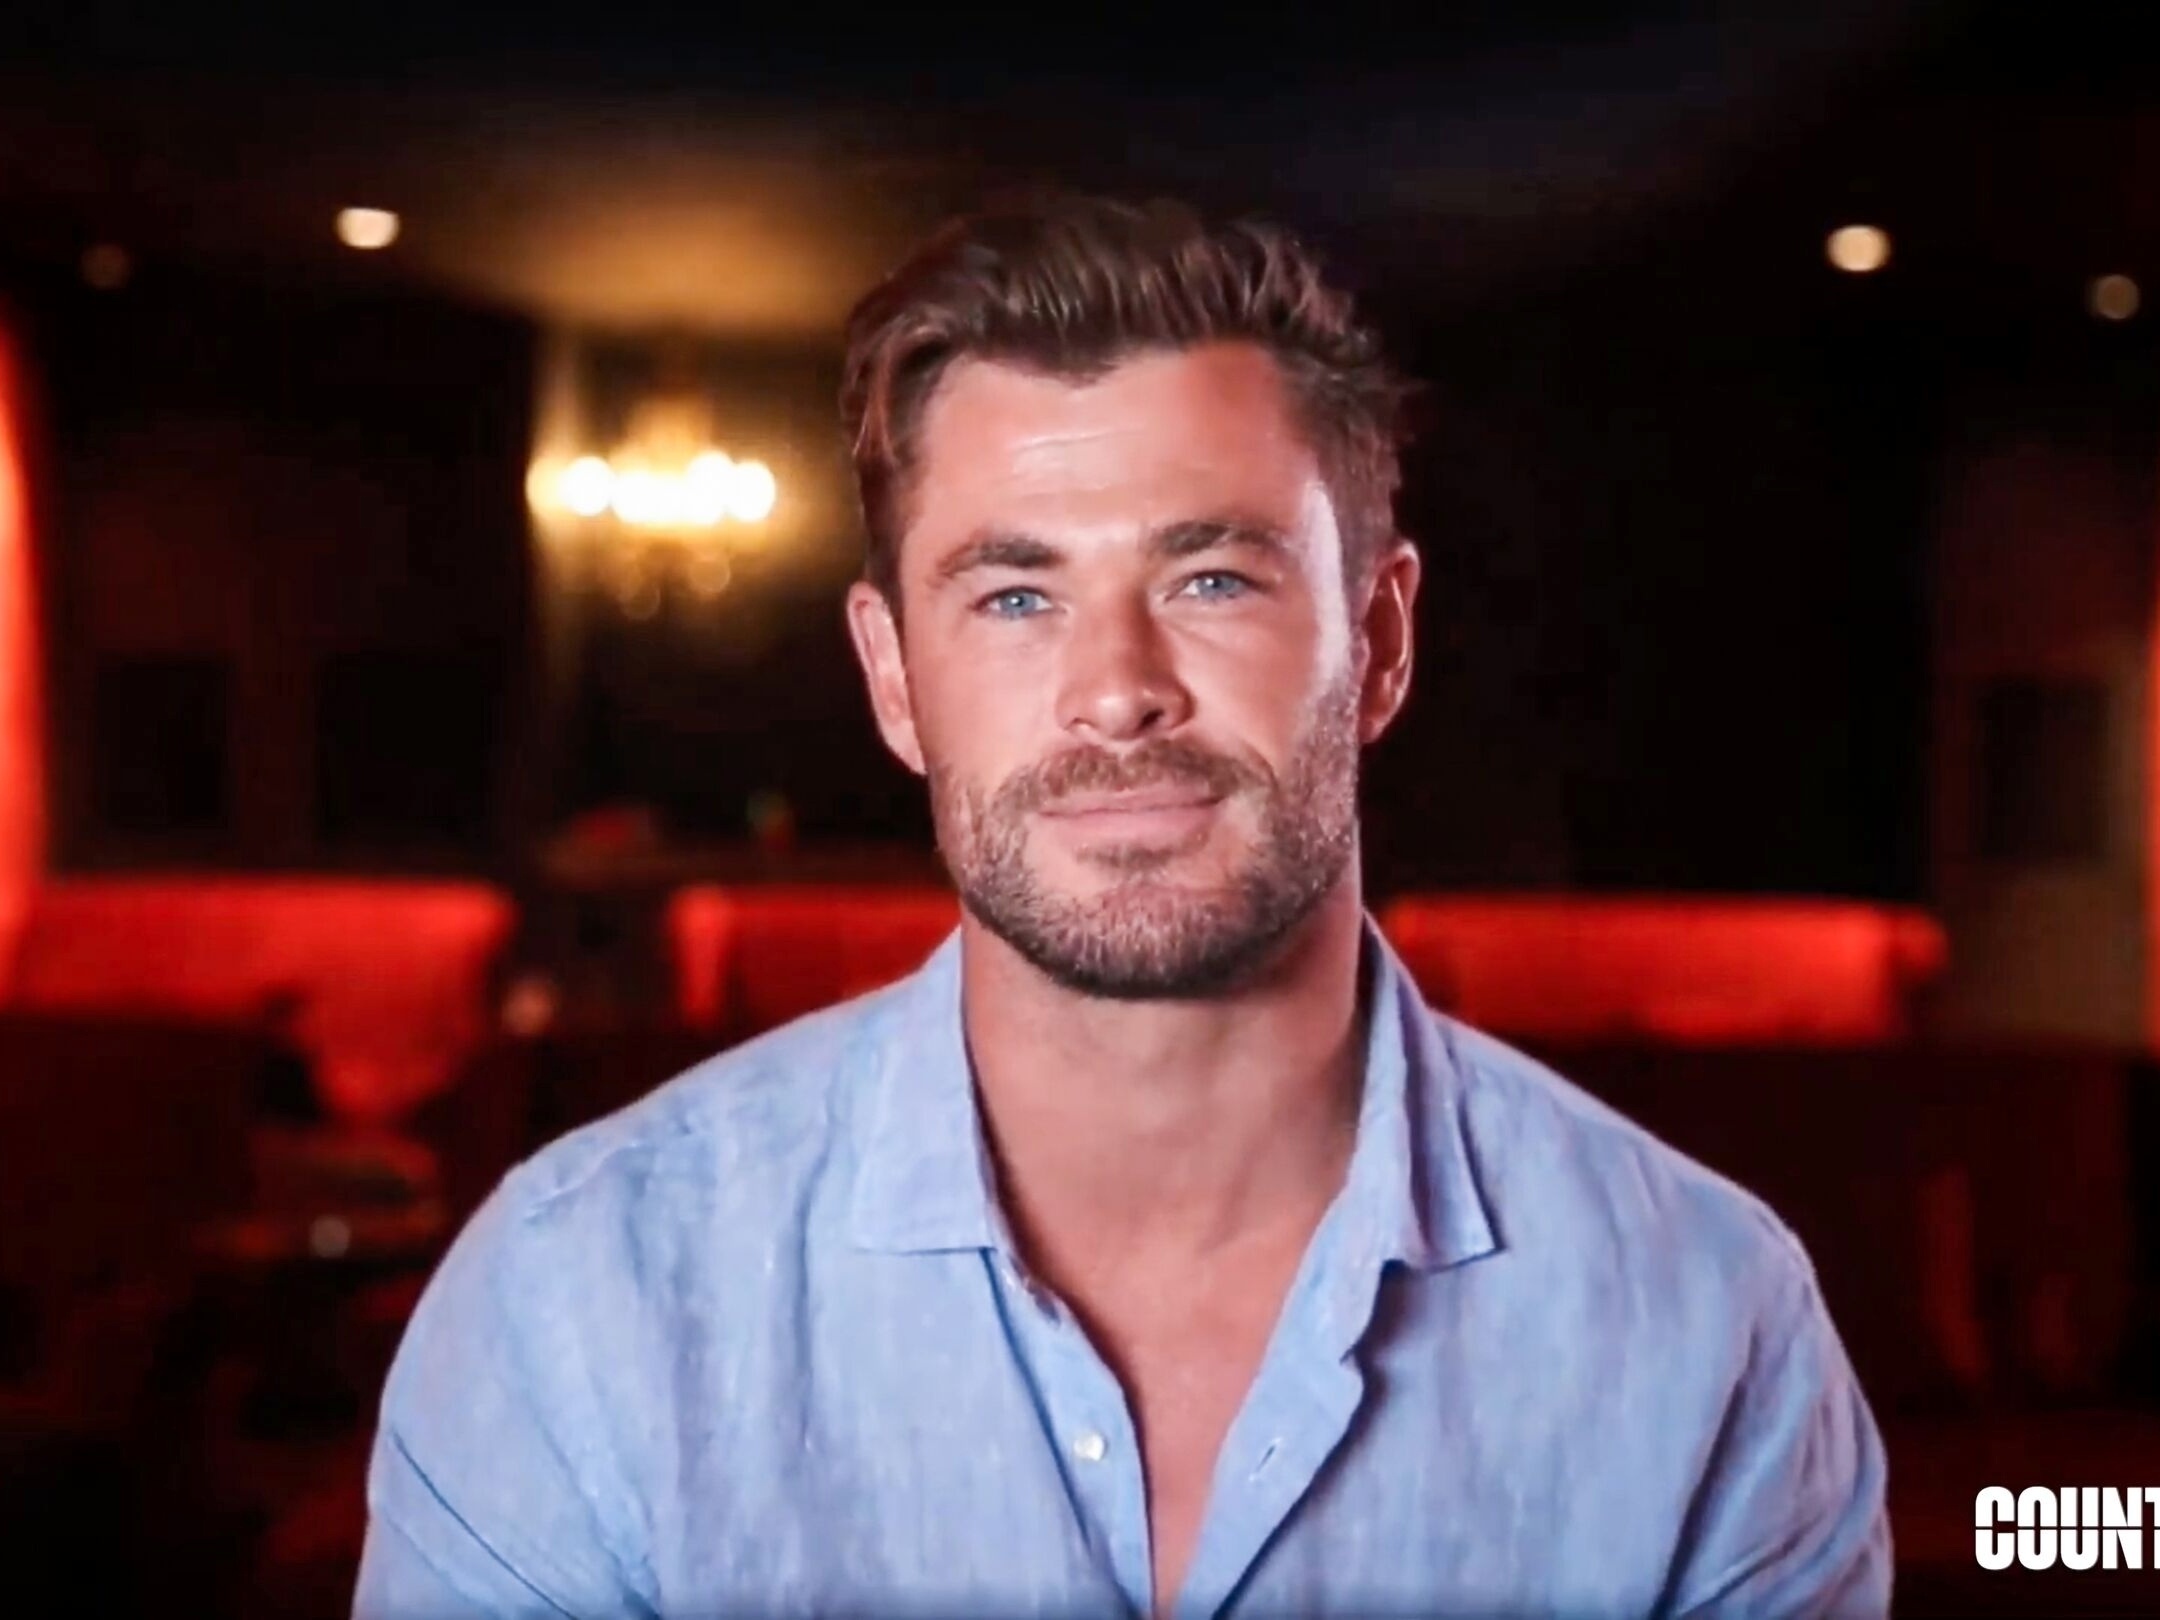 Chris Hemsworth, o Thor, salva carreira ao recusar filme bem